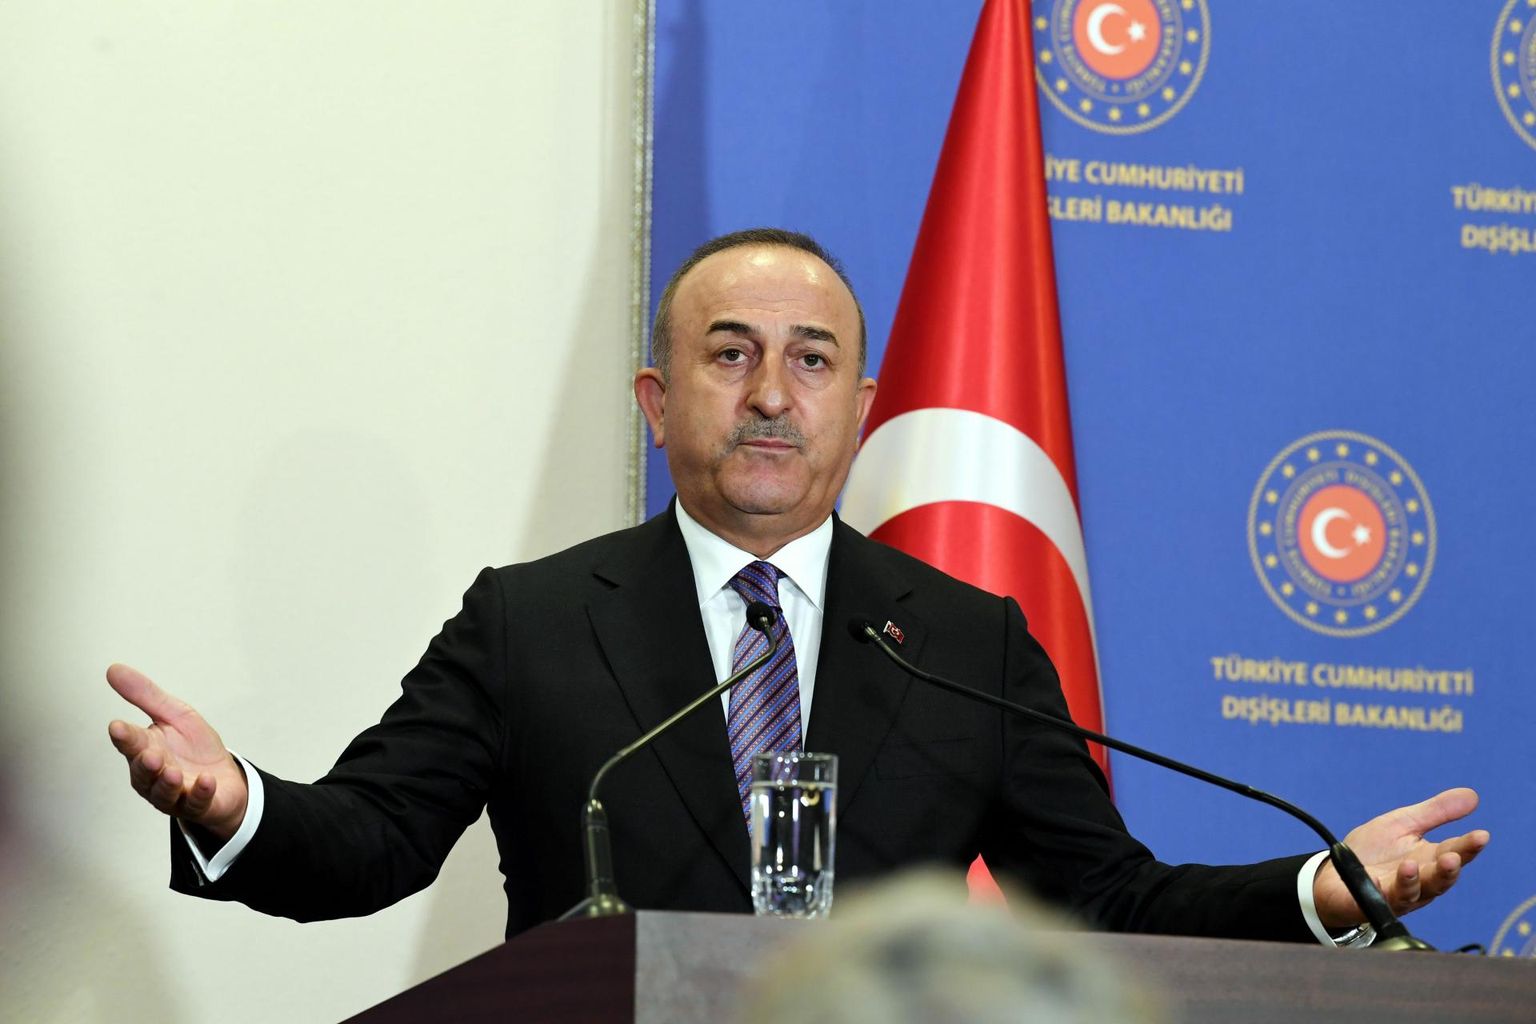 Министр иностранных дел Турции Мевлют Чавушоглу.